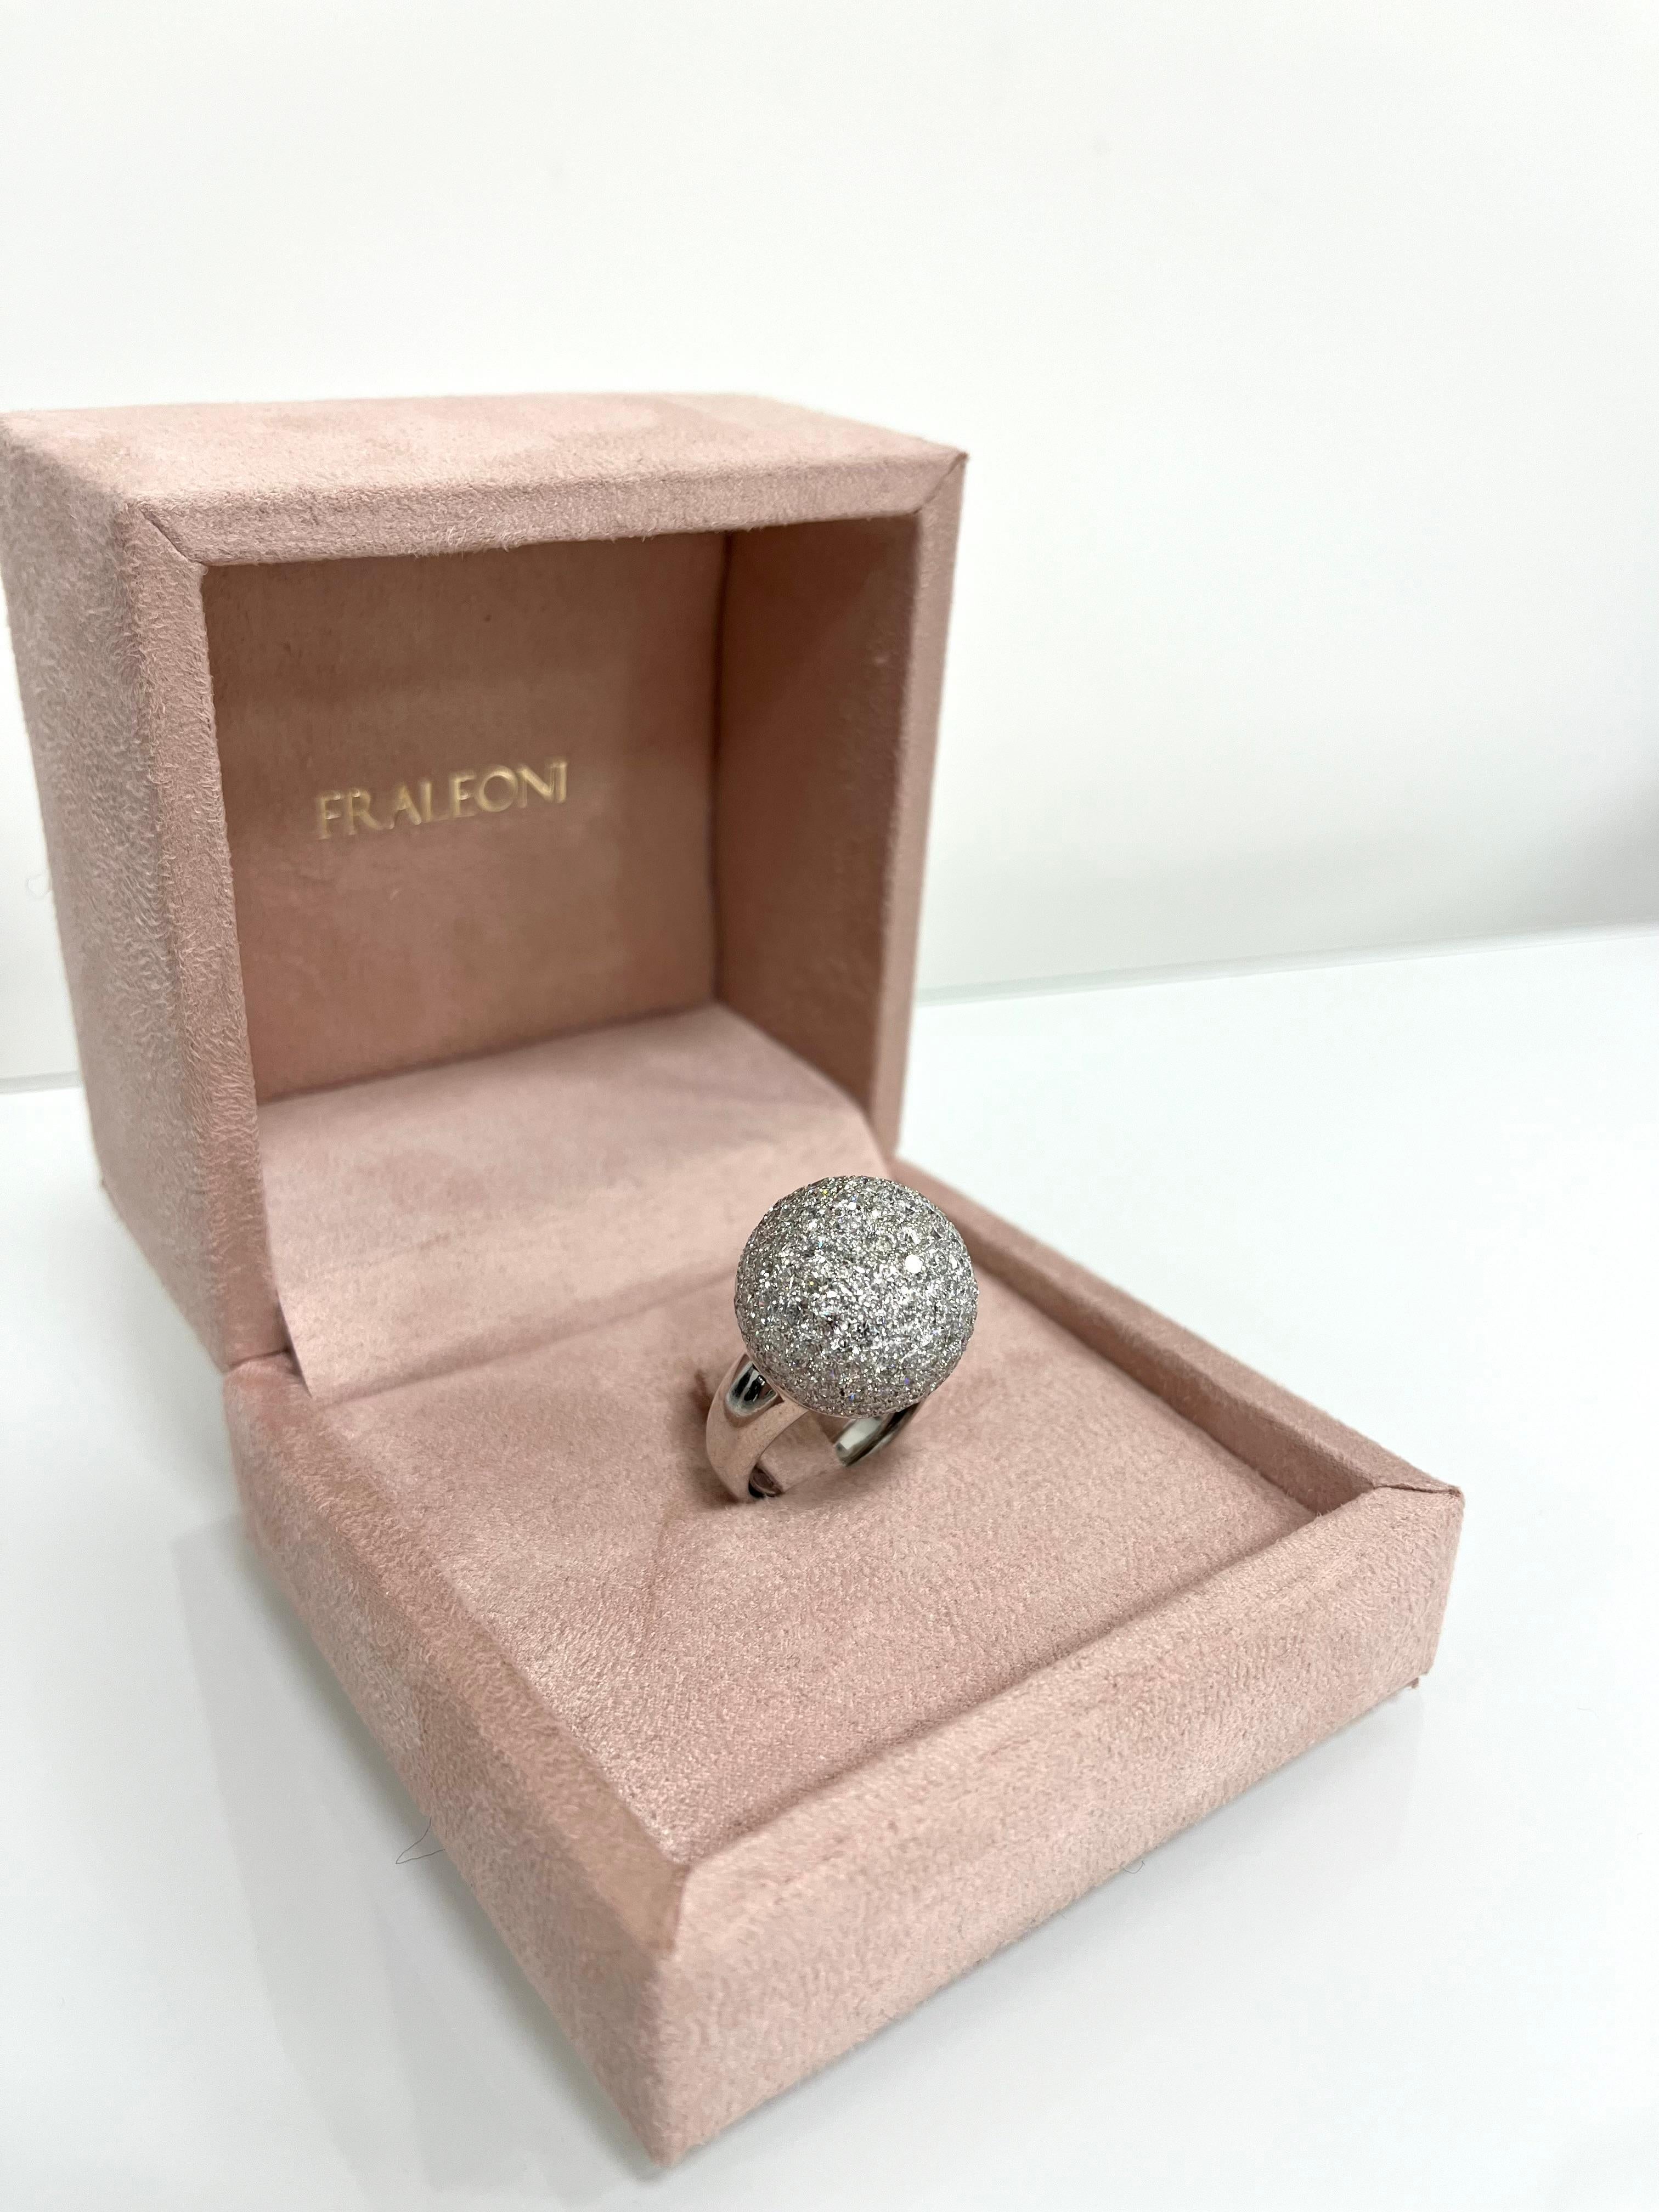 Women's or Men's Fraleoni 18 Kt. White Gold Diamond Cocktail Ring For Sale